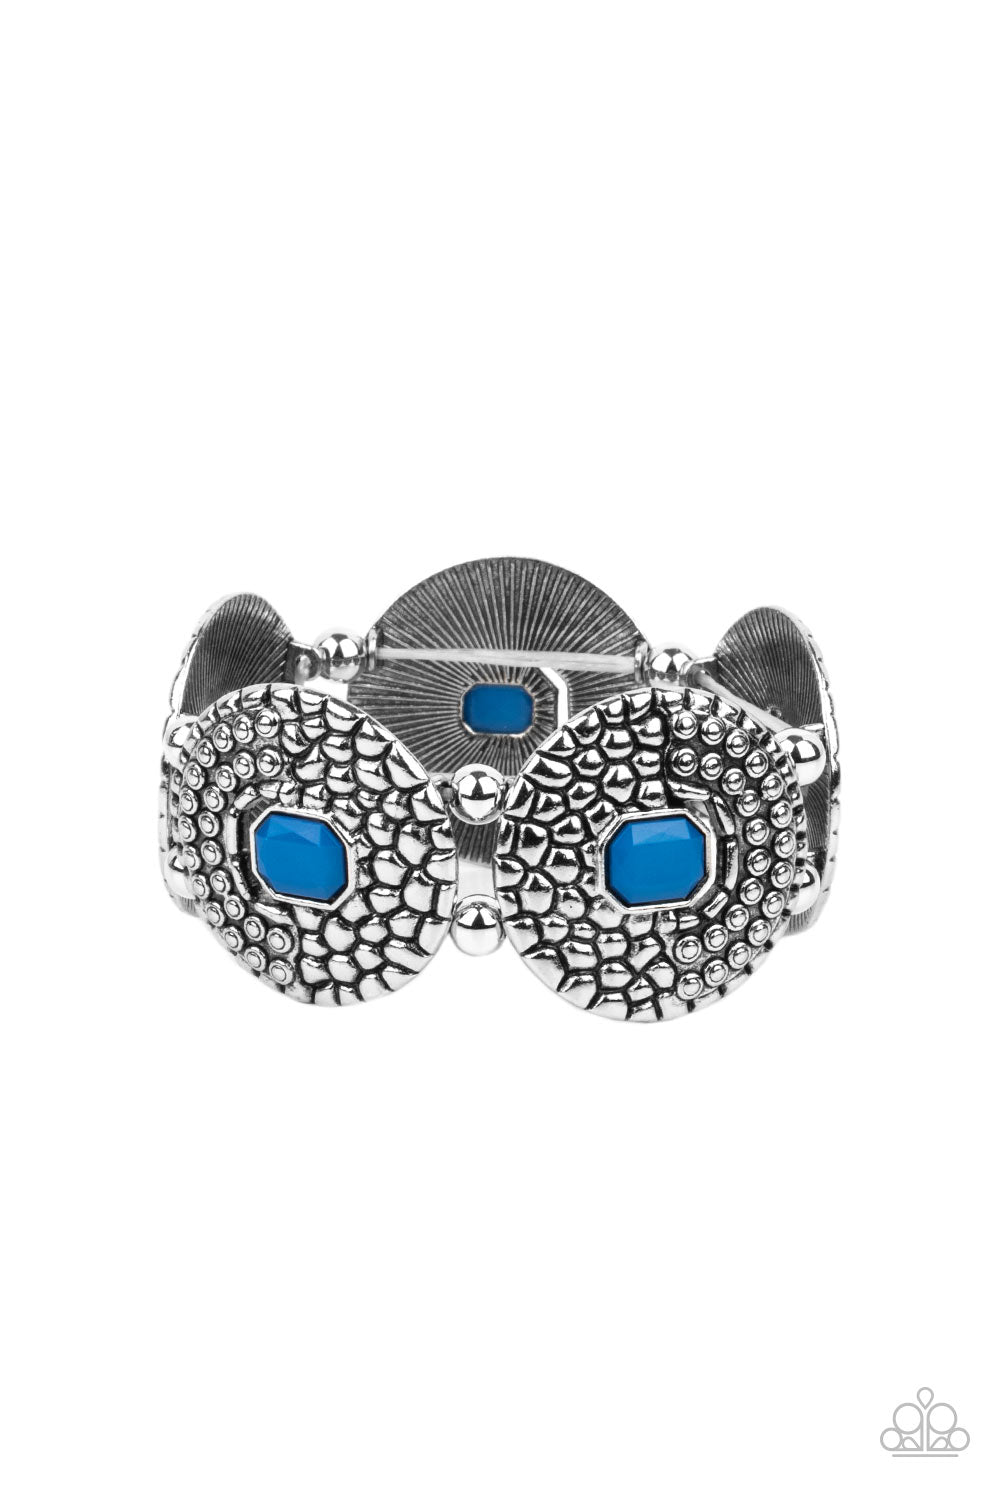 Paparazzi - Prismatic Prowl - Blue Bracelet